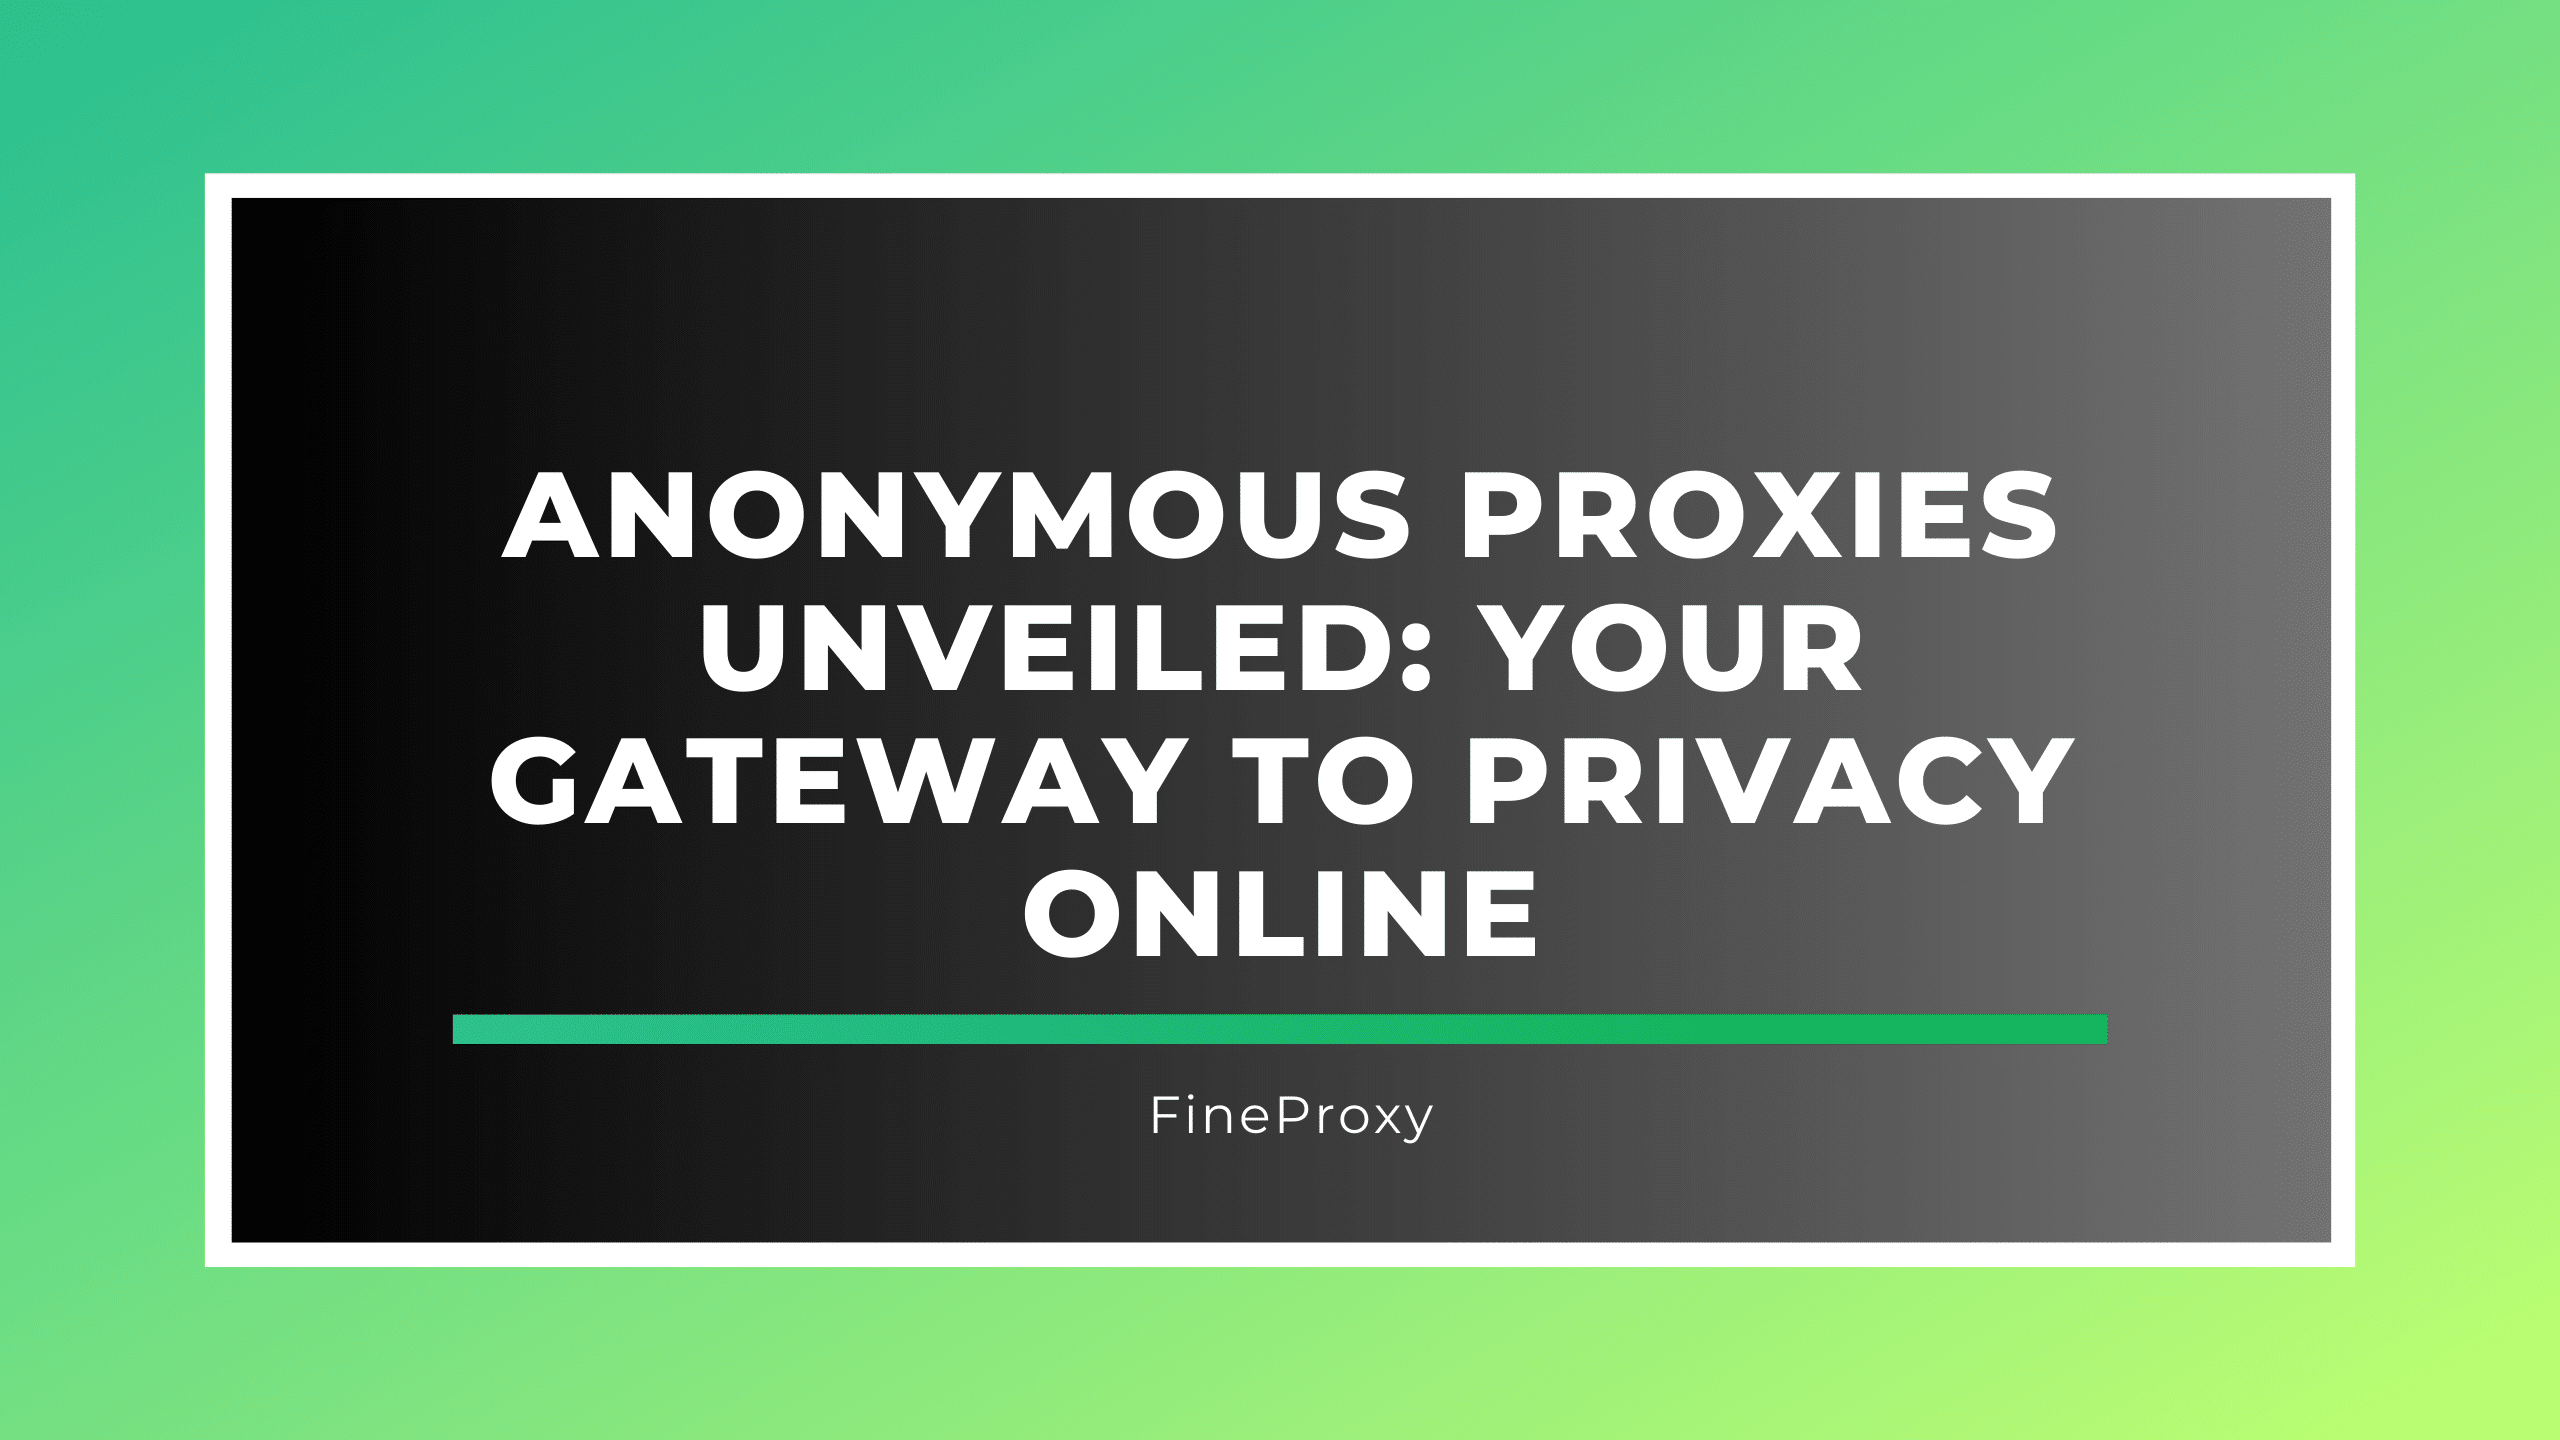 Se presentan los servidores proxy anónimos: su puerta de entrada a la privacidad en línea